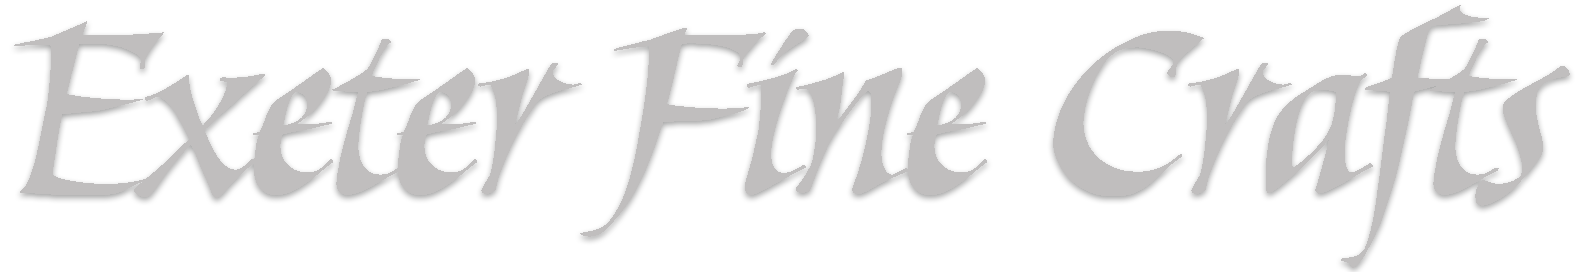 Exeter Fine Crafts Logo